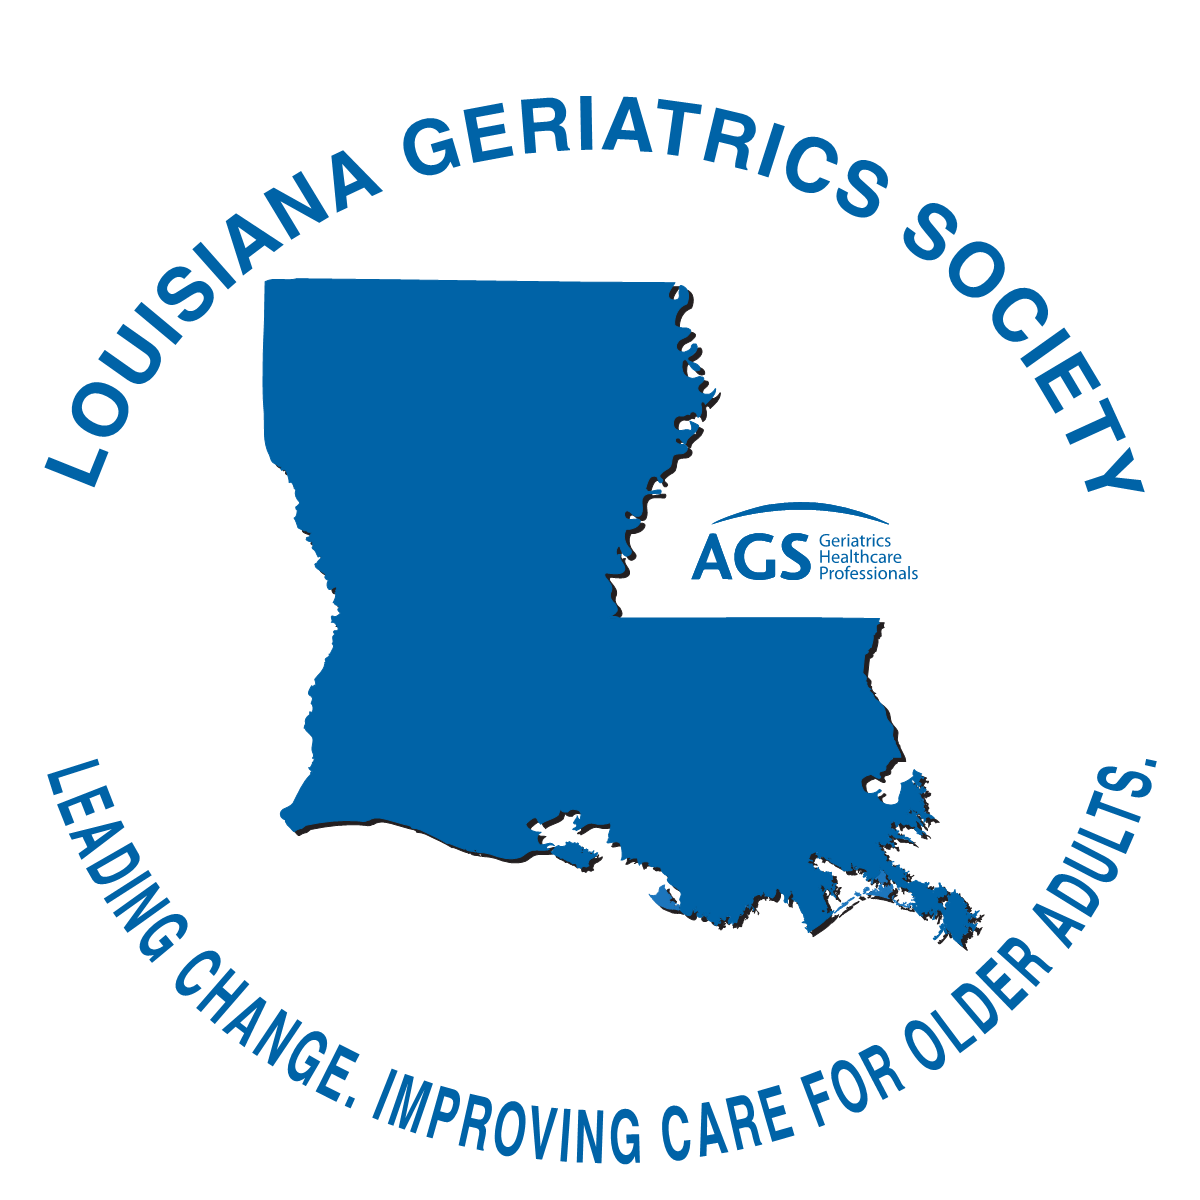 Louisiana Geriatrics Society